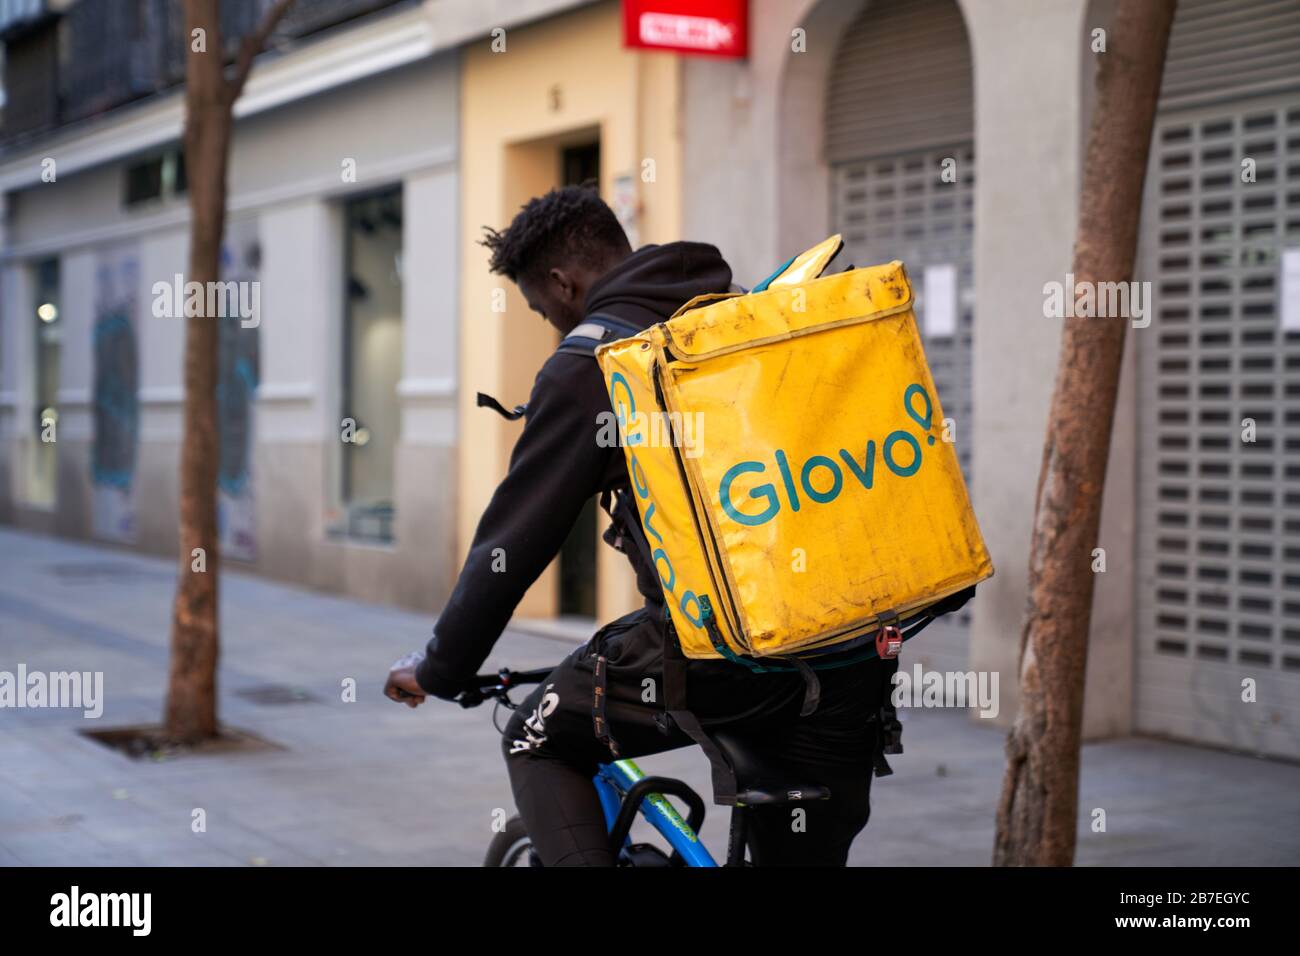 Un motard de livraison Glovo descend normalement occupé Calle Fuencarral, il est principalement des marcheurs de chien et des gens de livraison hors pendant l'état d'urgence Banque D'Images